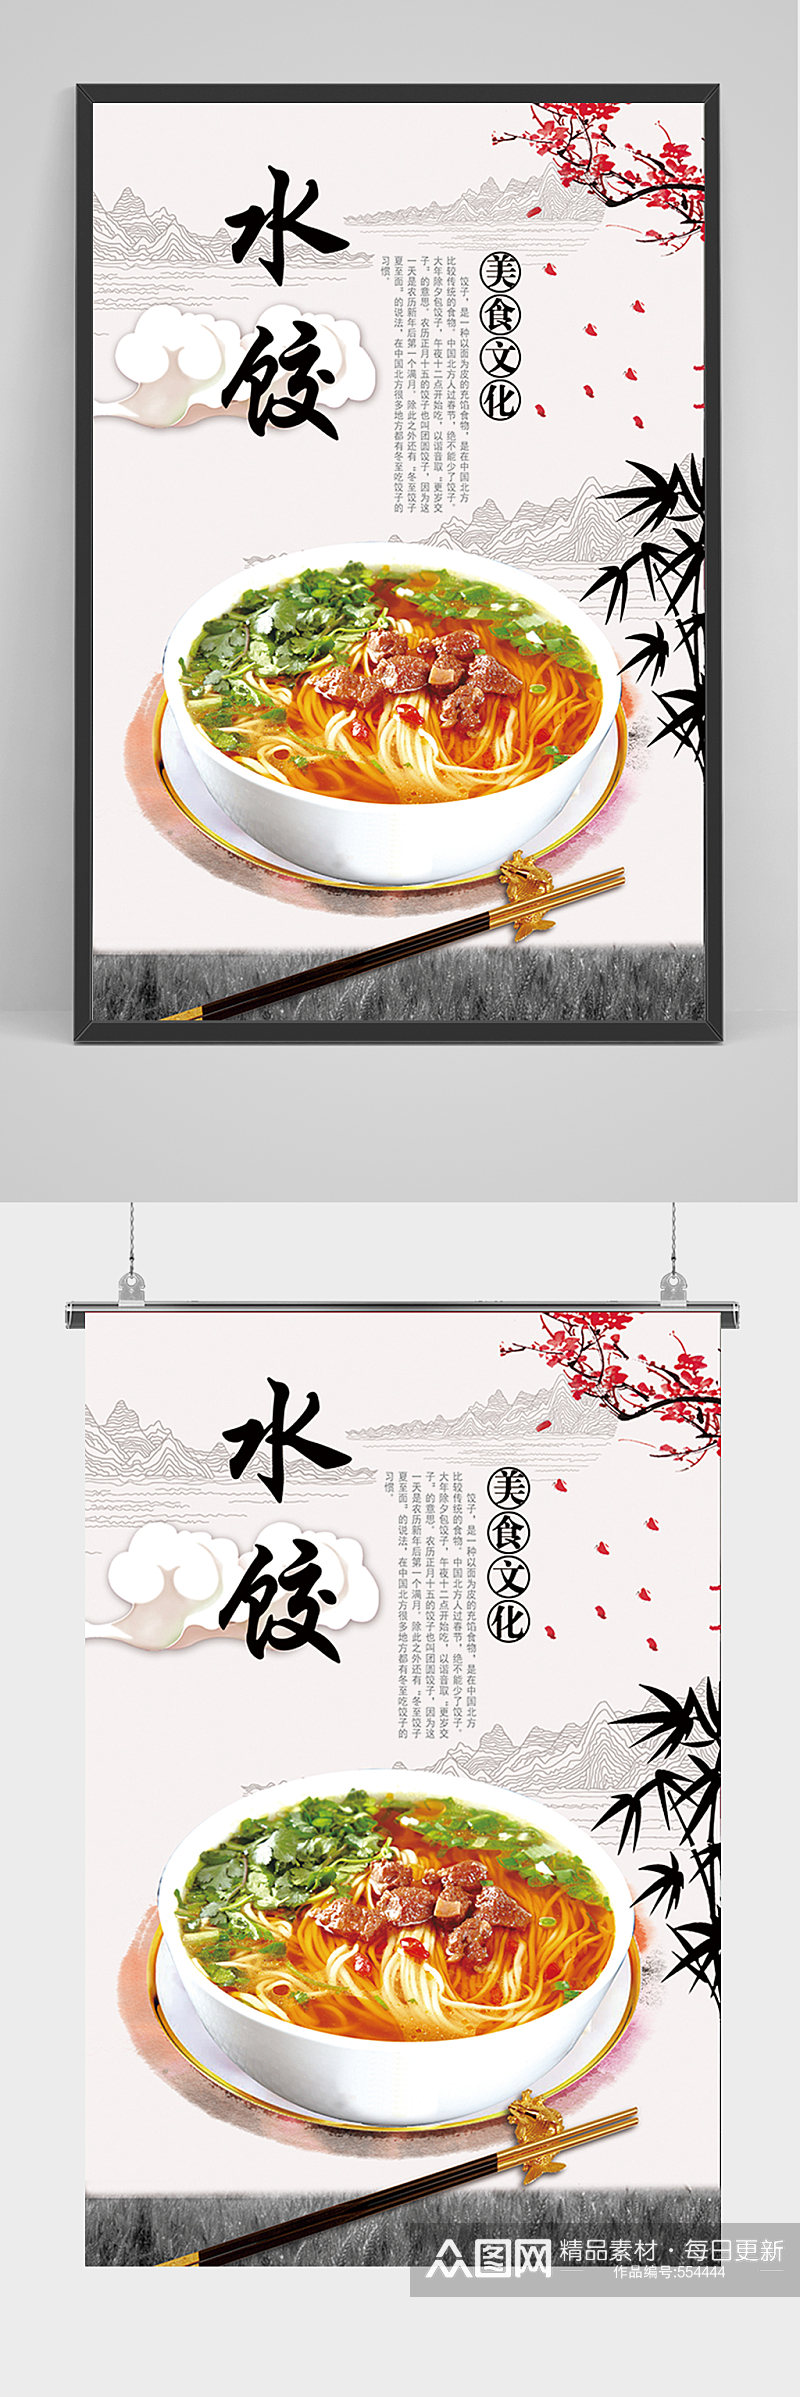 中国风美食水饺海报素材